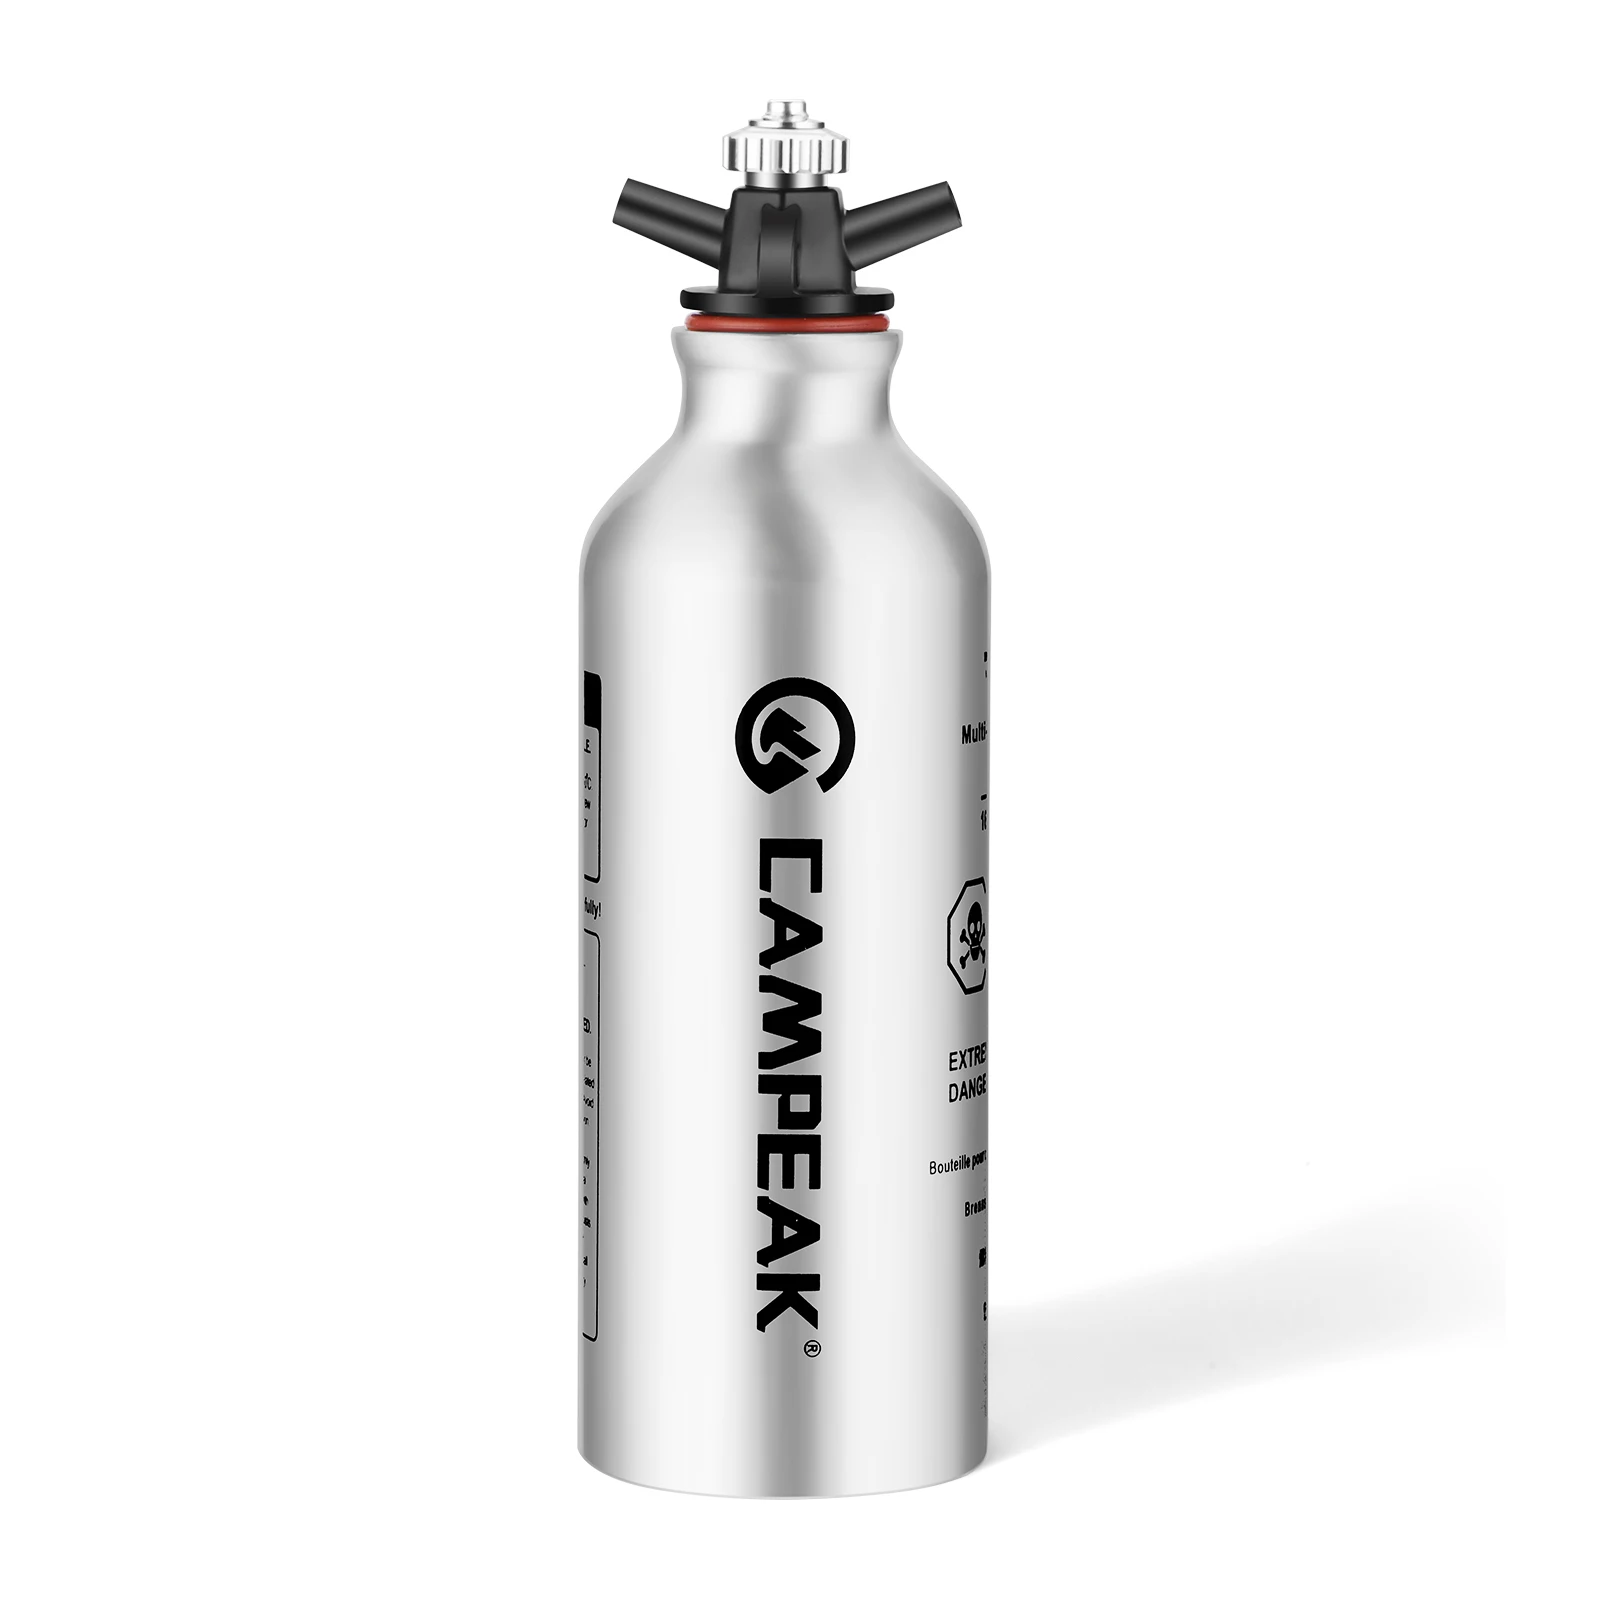 CAMPST Portable Aluminum liquid Fuel Bottle Aluminum Gasoline